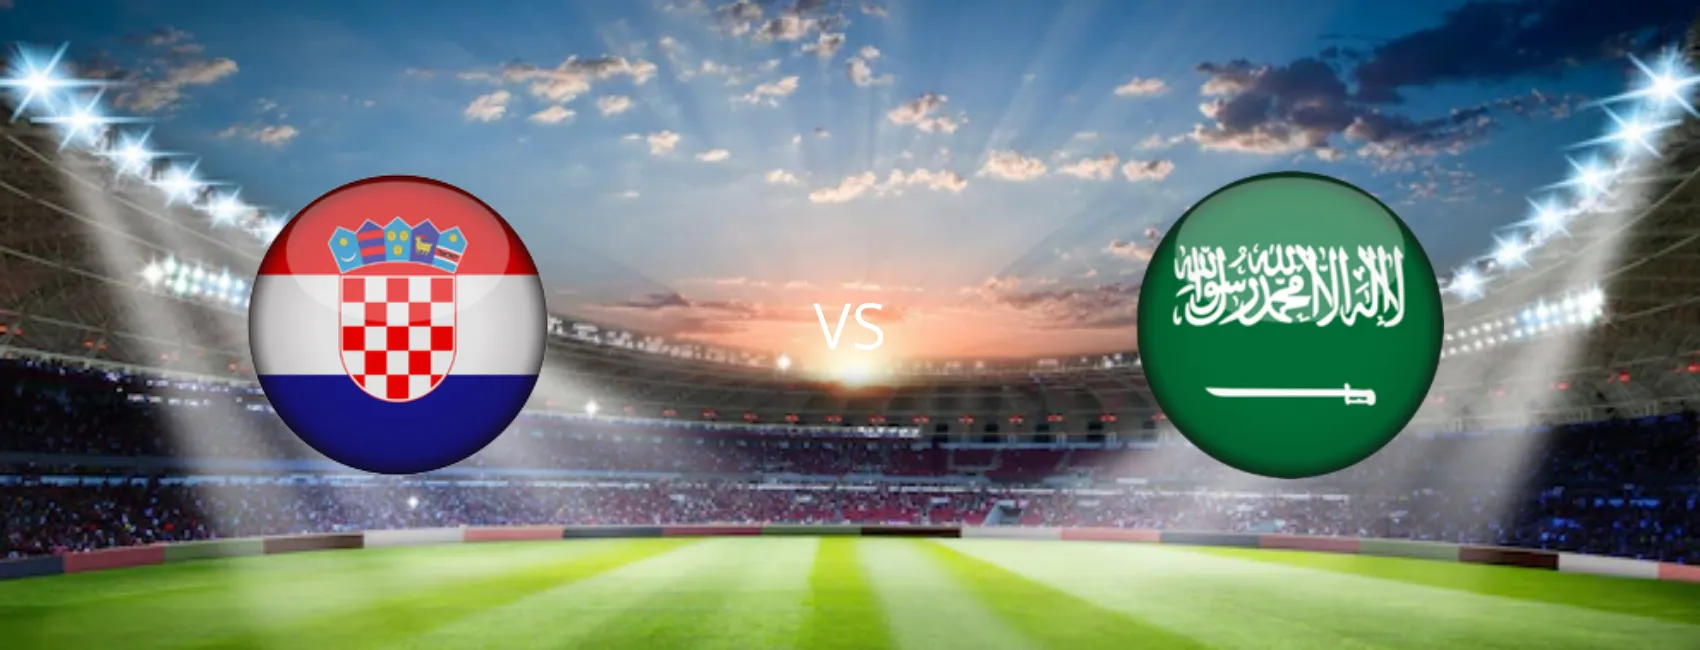  مشاهدة مباراة السعودية و كرواتيا بث مباشر 16/11/2022 Saudi Arabia vs Croatia